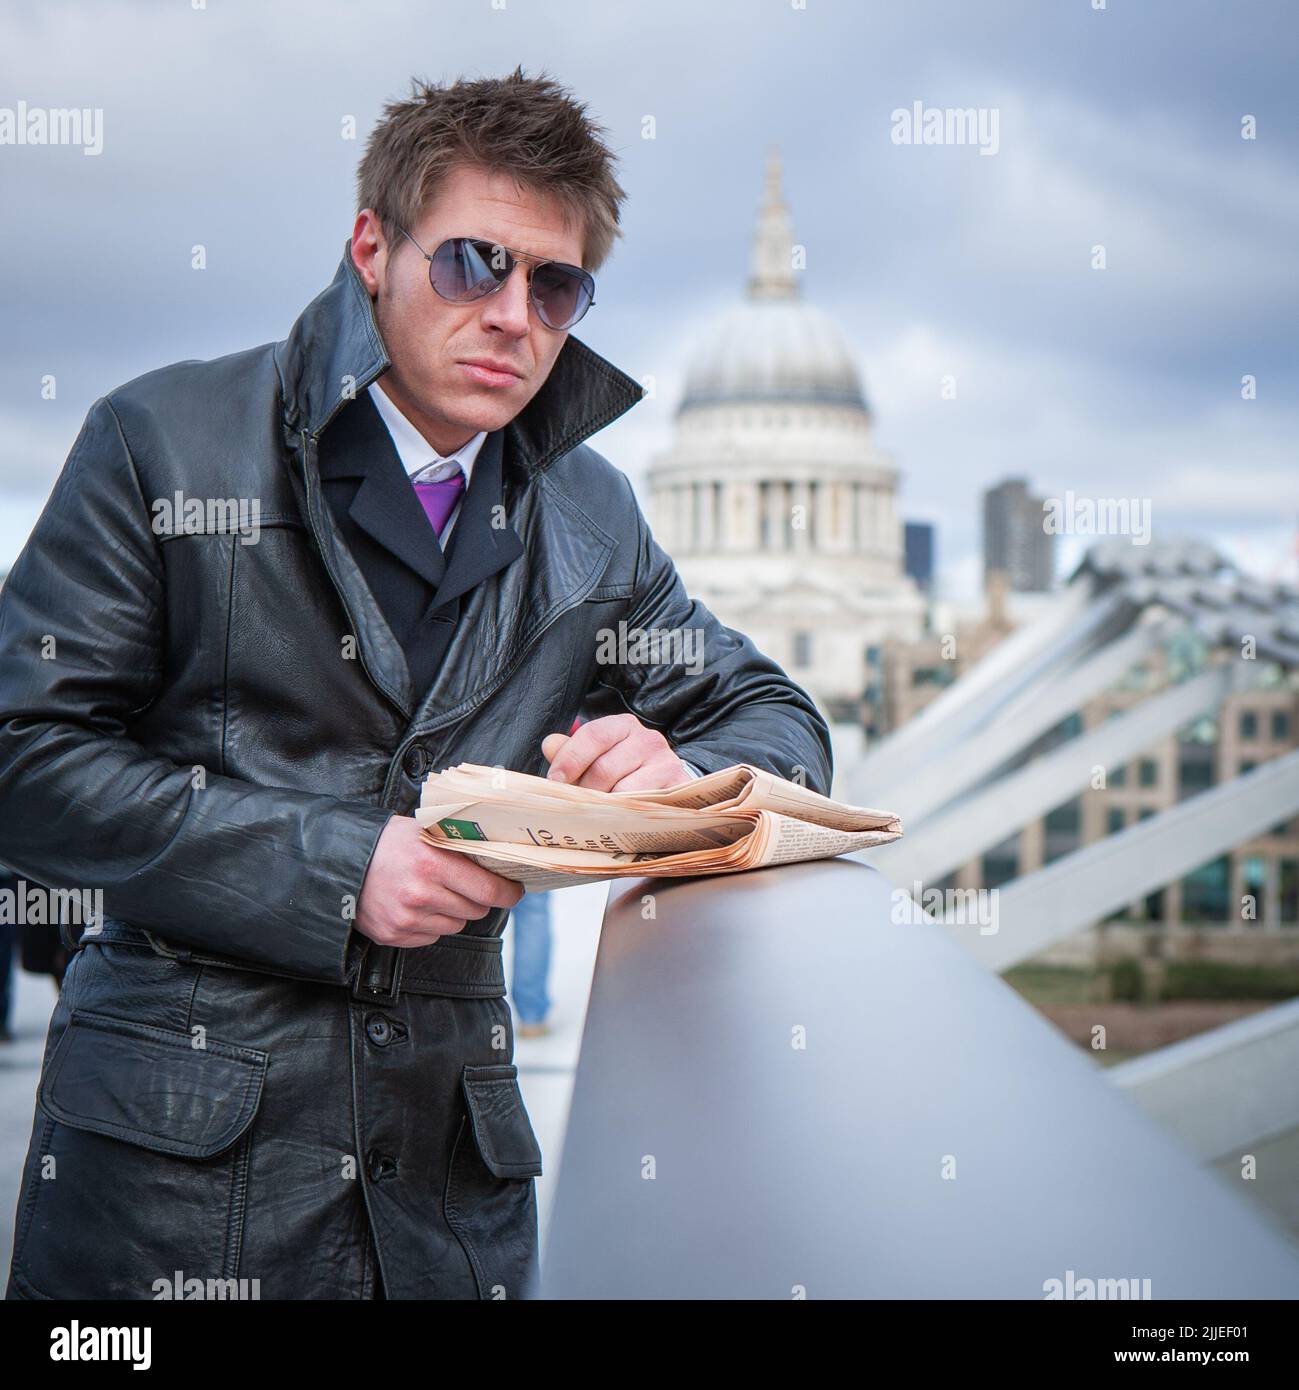 Undercover Agent; verdeckte Operationen. Ein Spion in einer verdeckten Operation auf der Millennium Bridge, London; aus einer Reihe von Bildern mit dem gleichen Charakter. Stockfoto